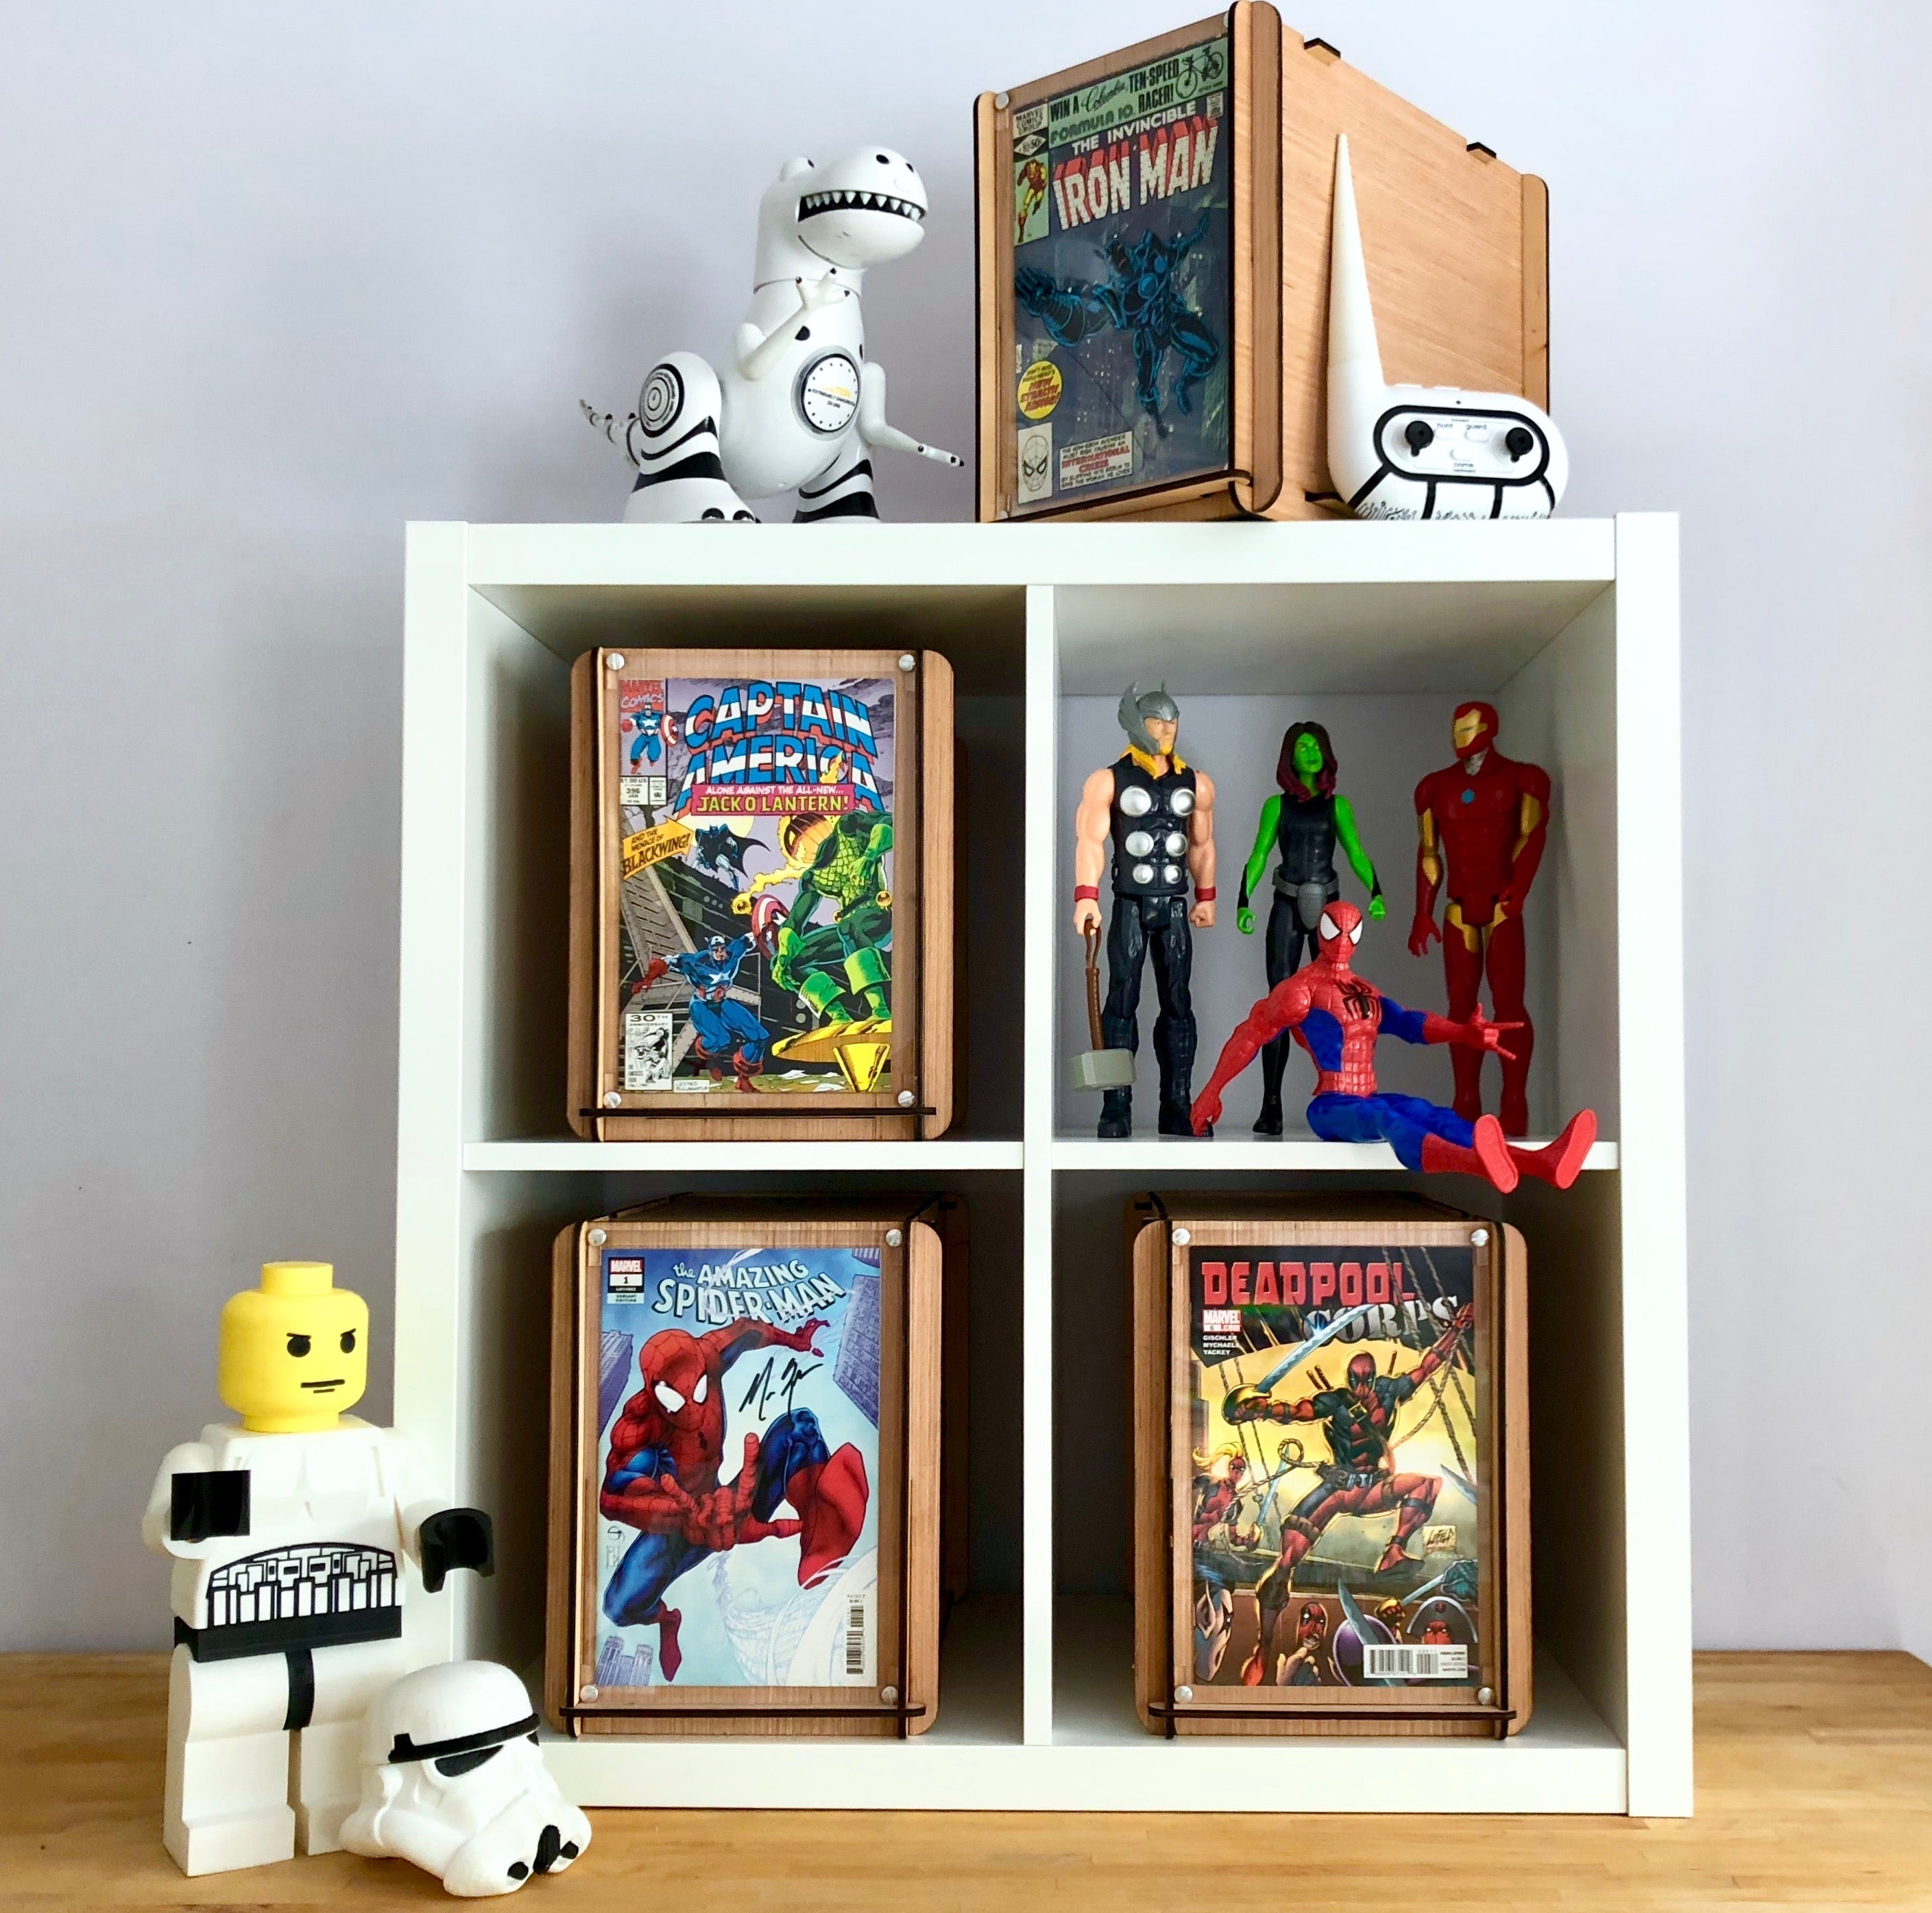 Vintage Marvel Team-Up Spider-Man & Thor Comic PLUS Wood